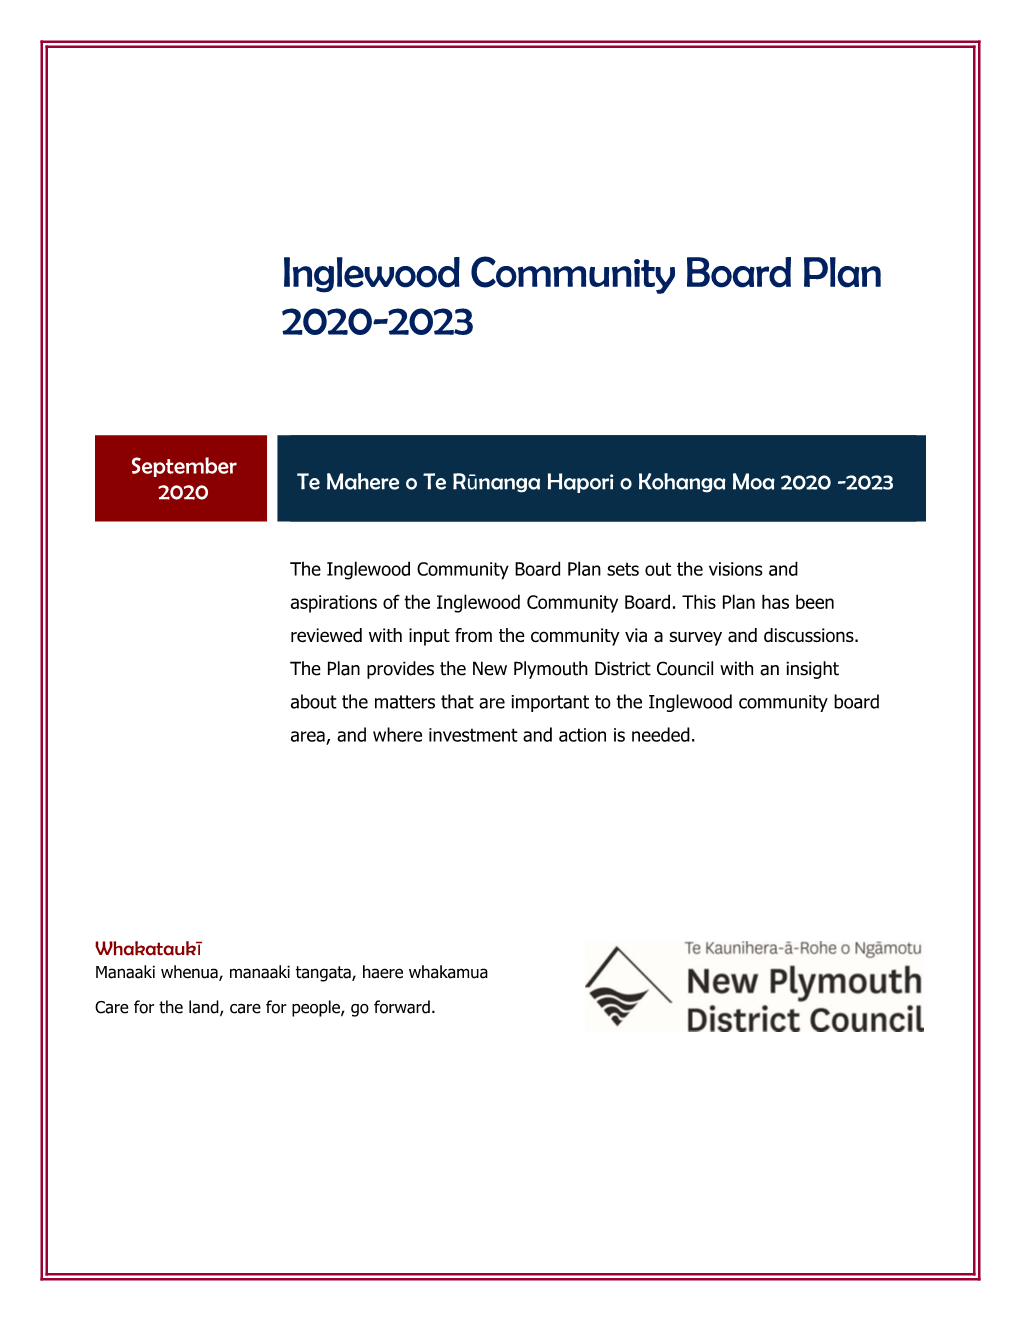 Inglewood Community Board Plan 2020-2023